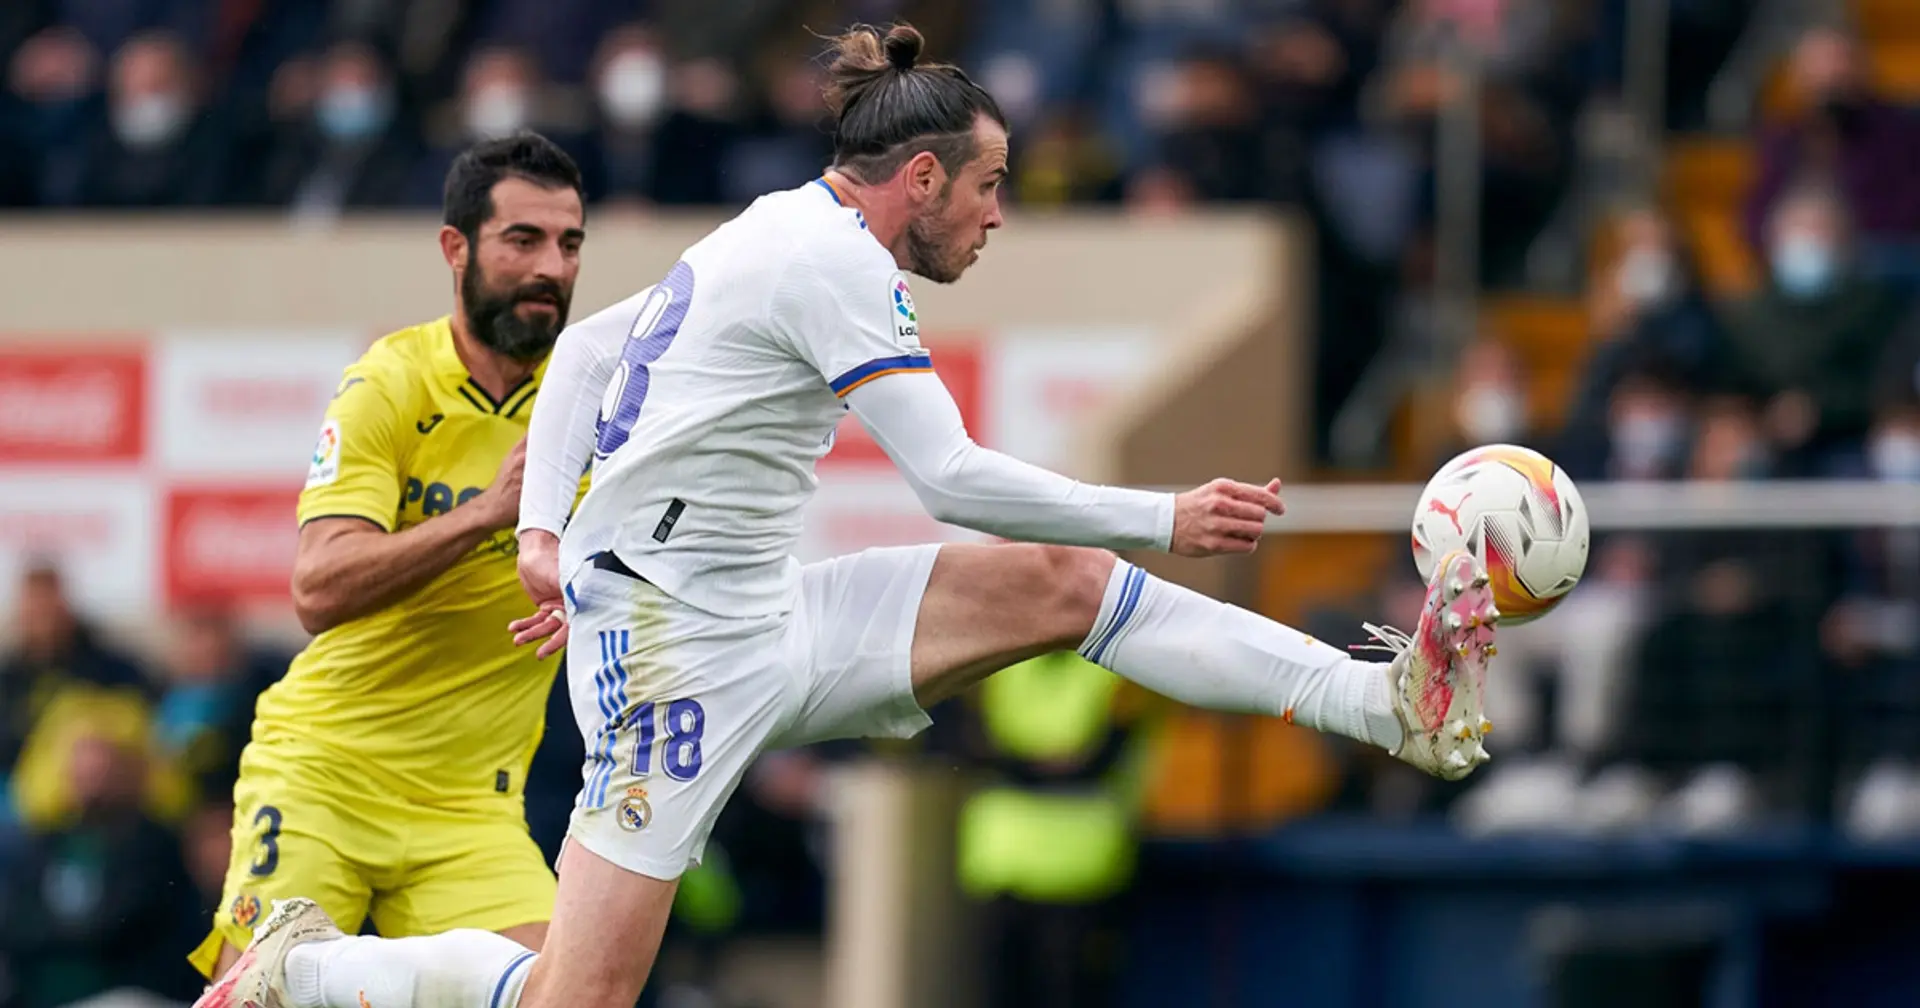 Bale - 7, Marcelo - 3: valoración de los jugadores del Real Madrid en el empate ante el Villarreal